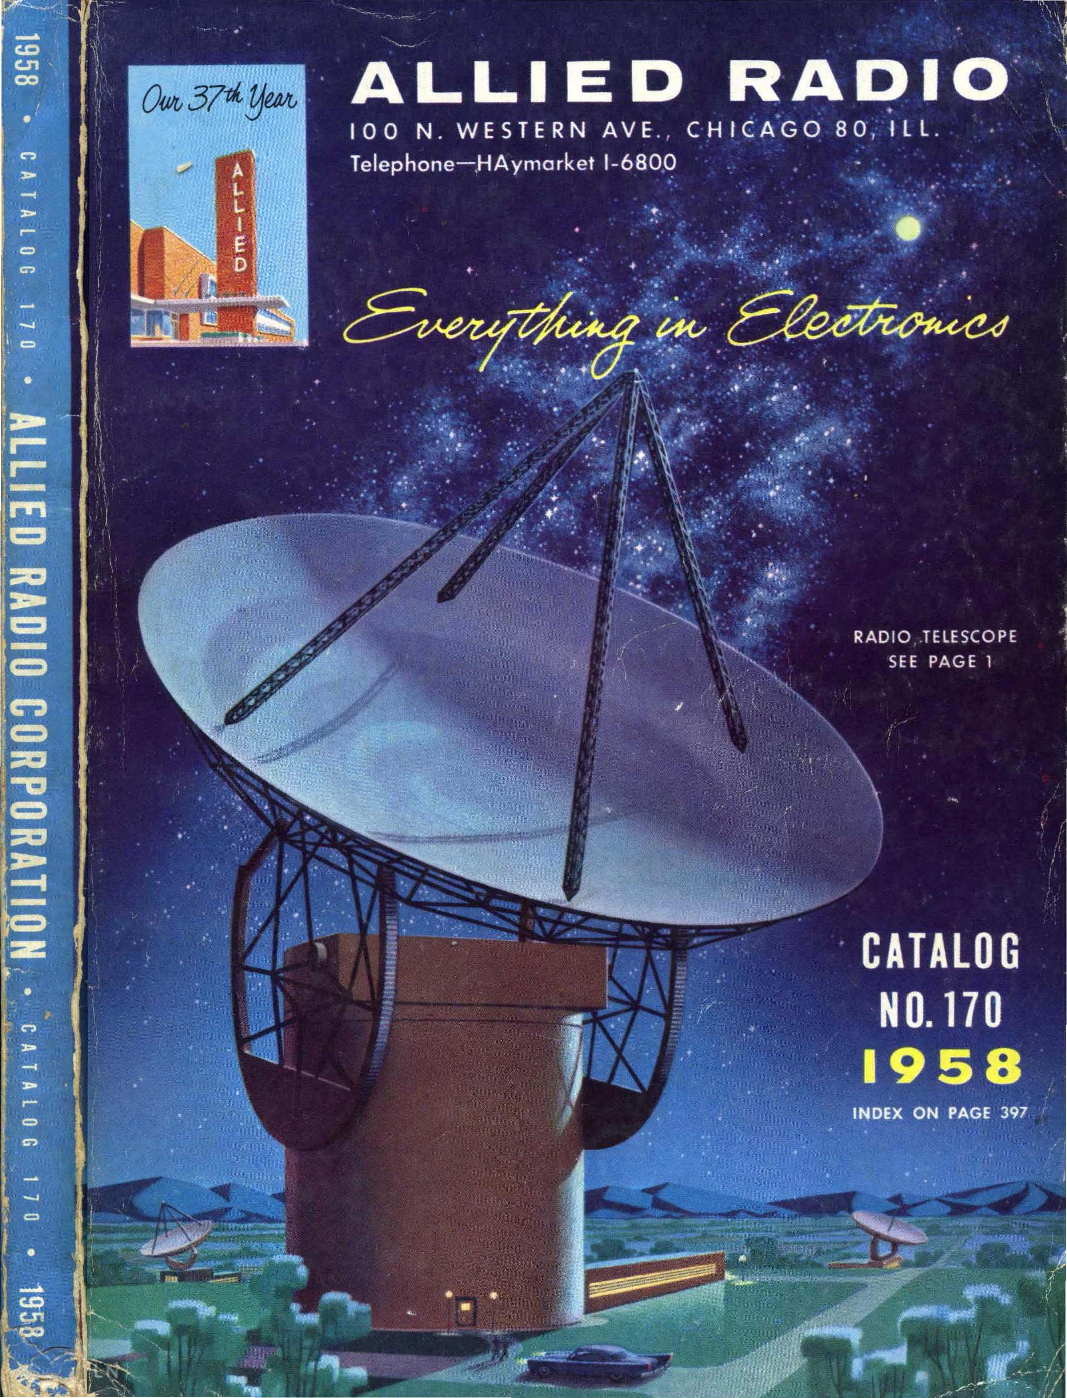 1958_Allied_Radio_Catalog_170 1958 Allied Radio Catalog 170